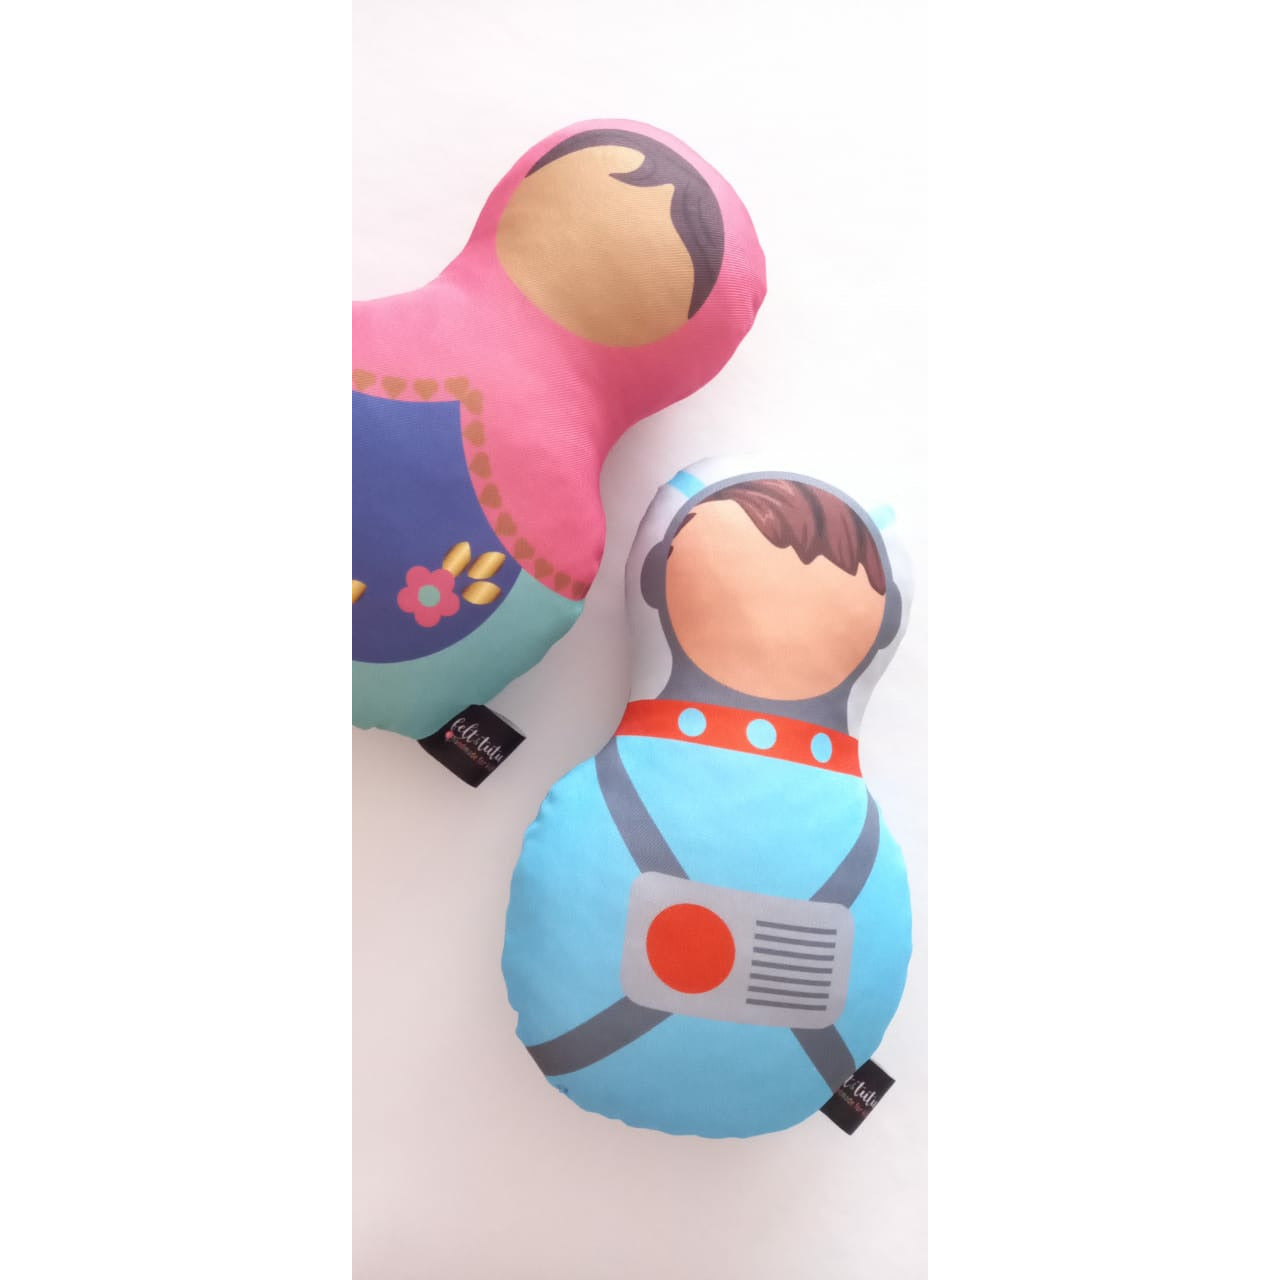 Handmade Hug Dolls - Babushka / Astro Boy